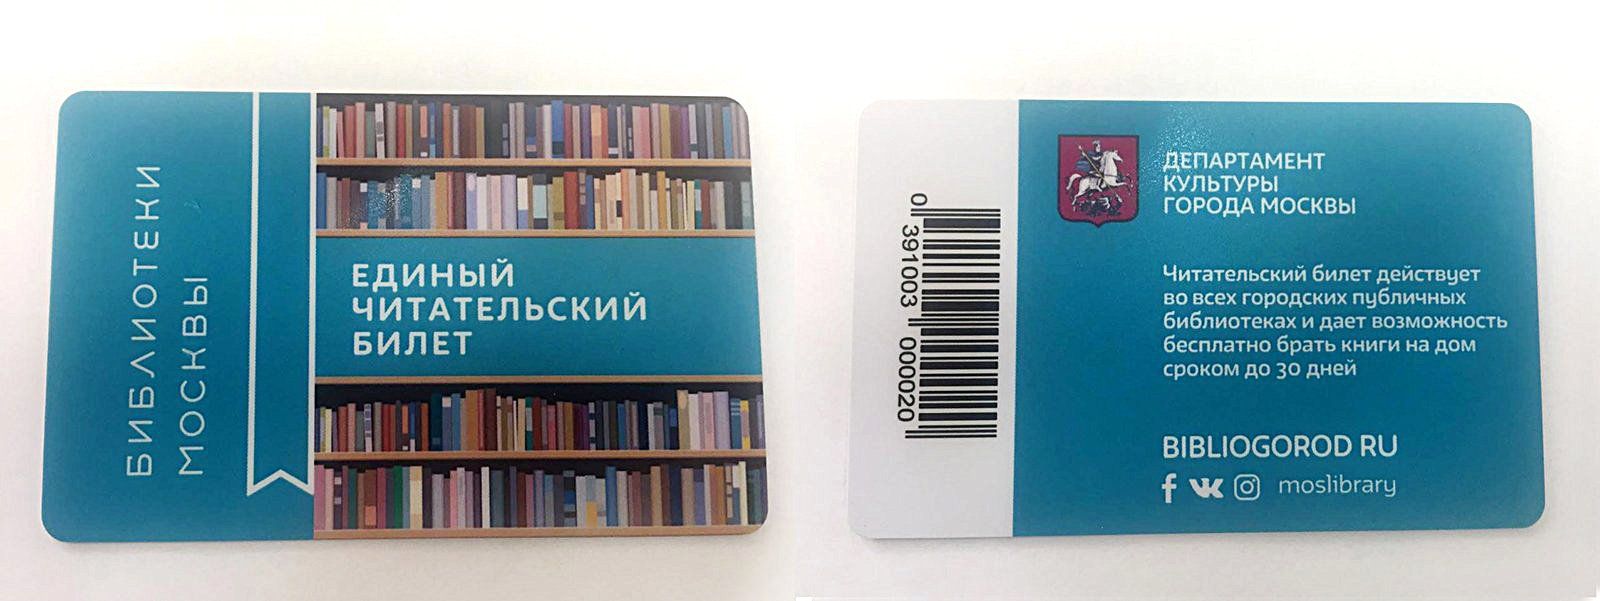 Единый читательский билет уже получили более 200 тысяч москвичей